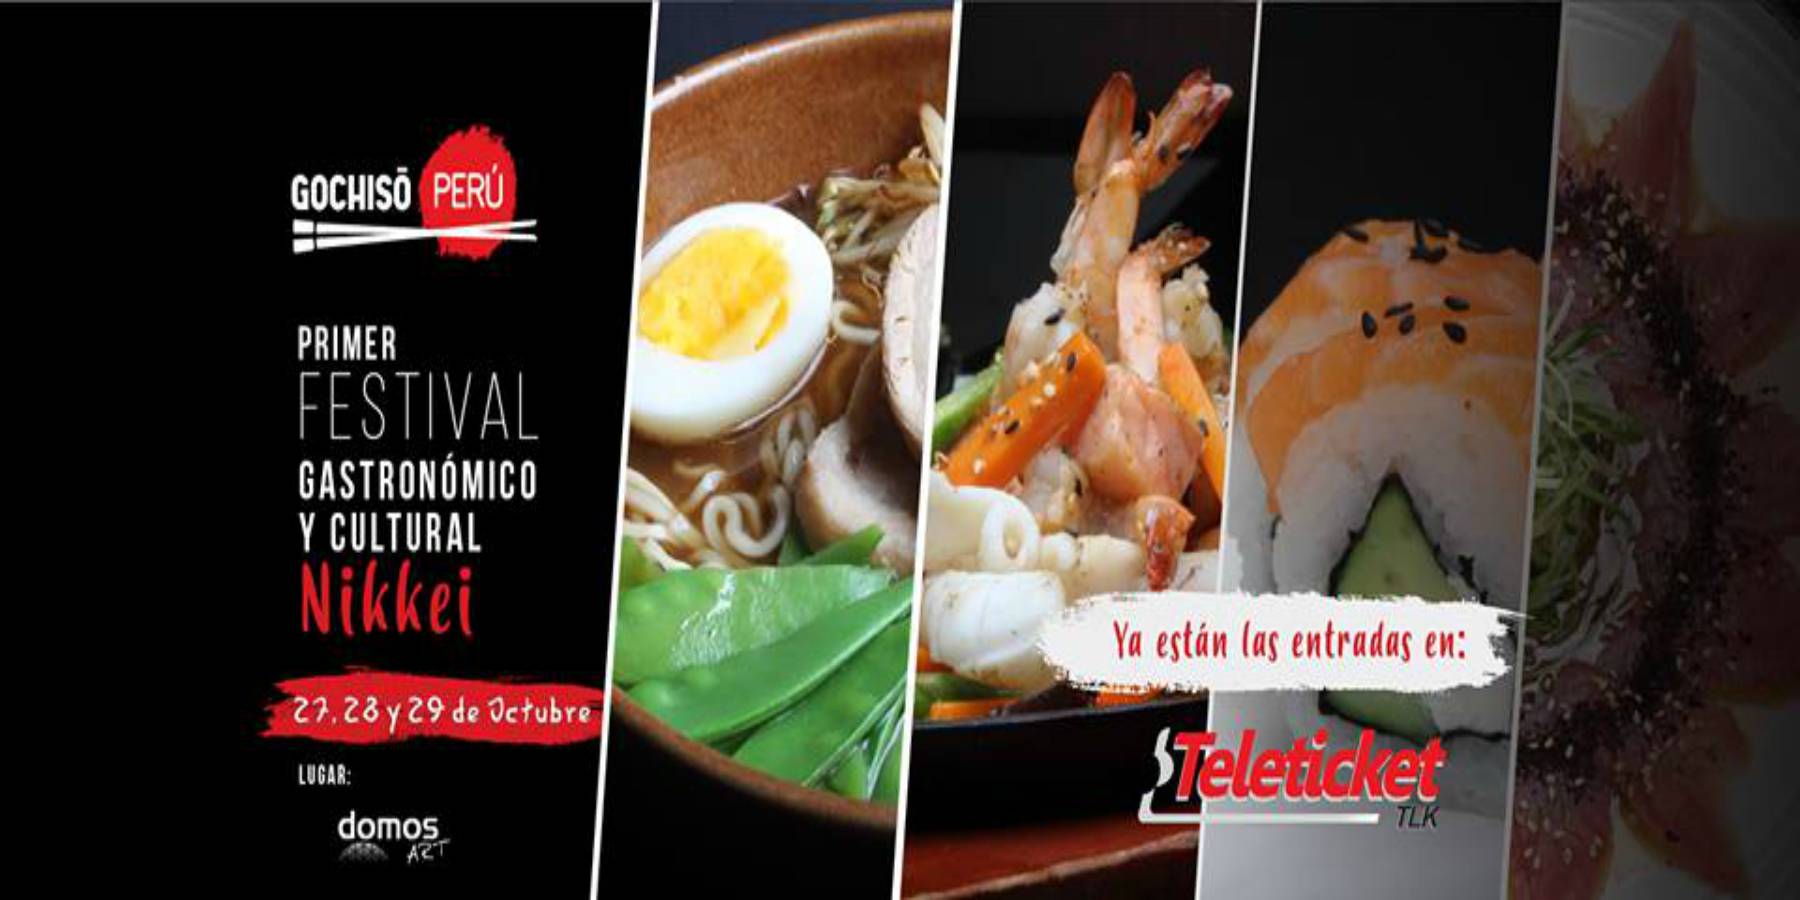 Gochiso Perú | El Primer Festival Gastronómico y Cultural Nikkei